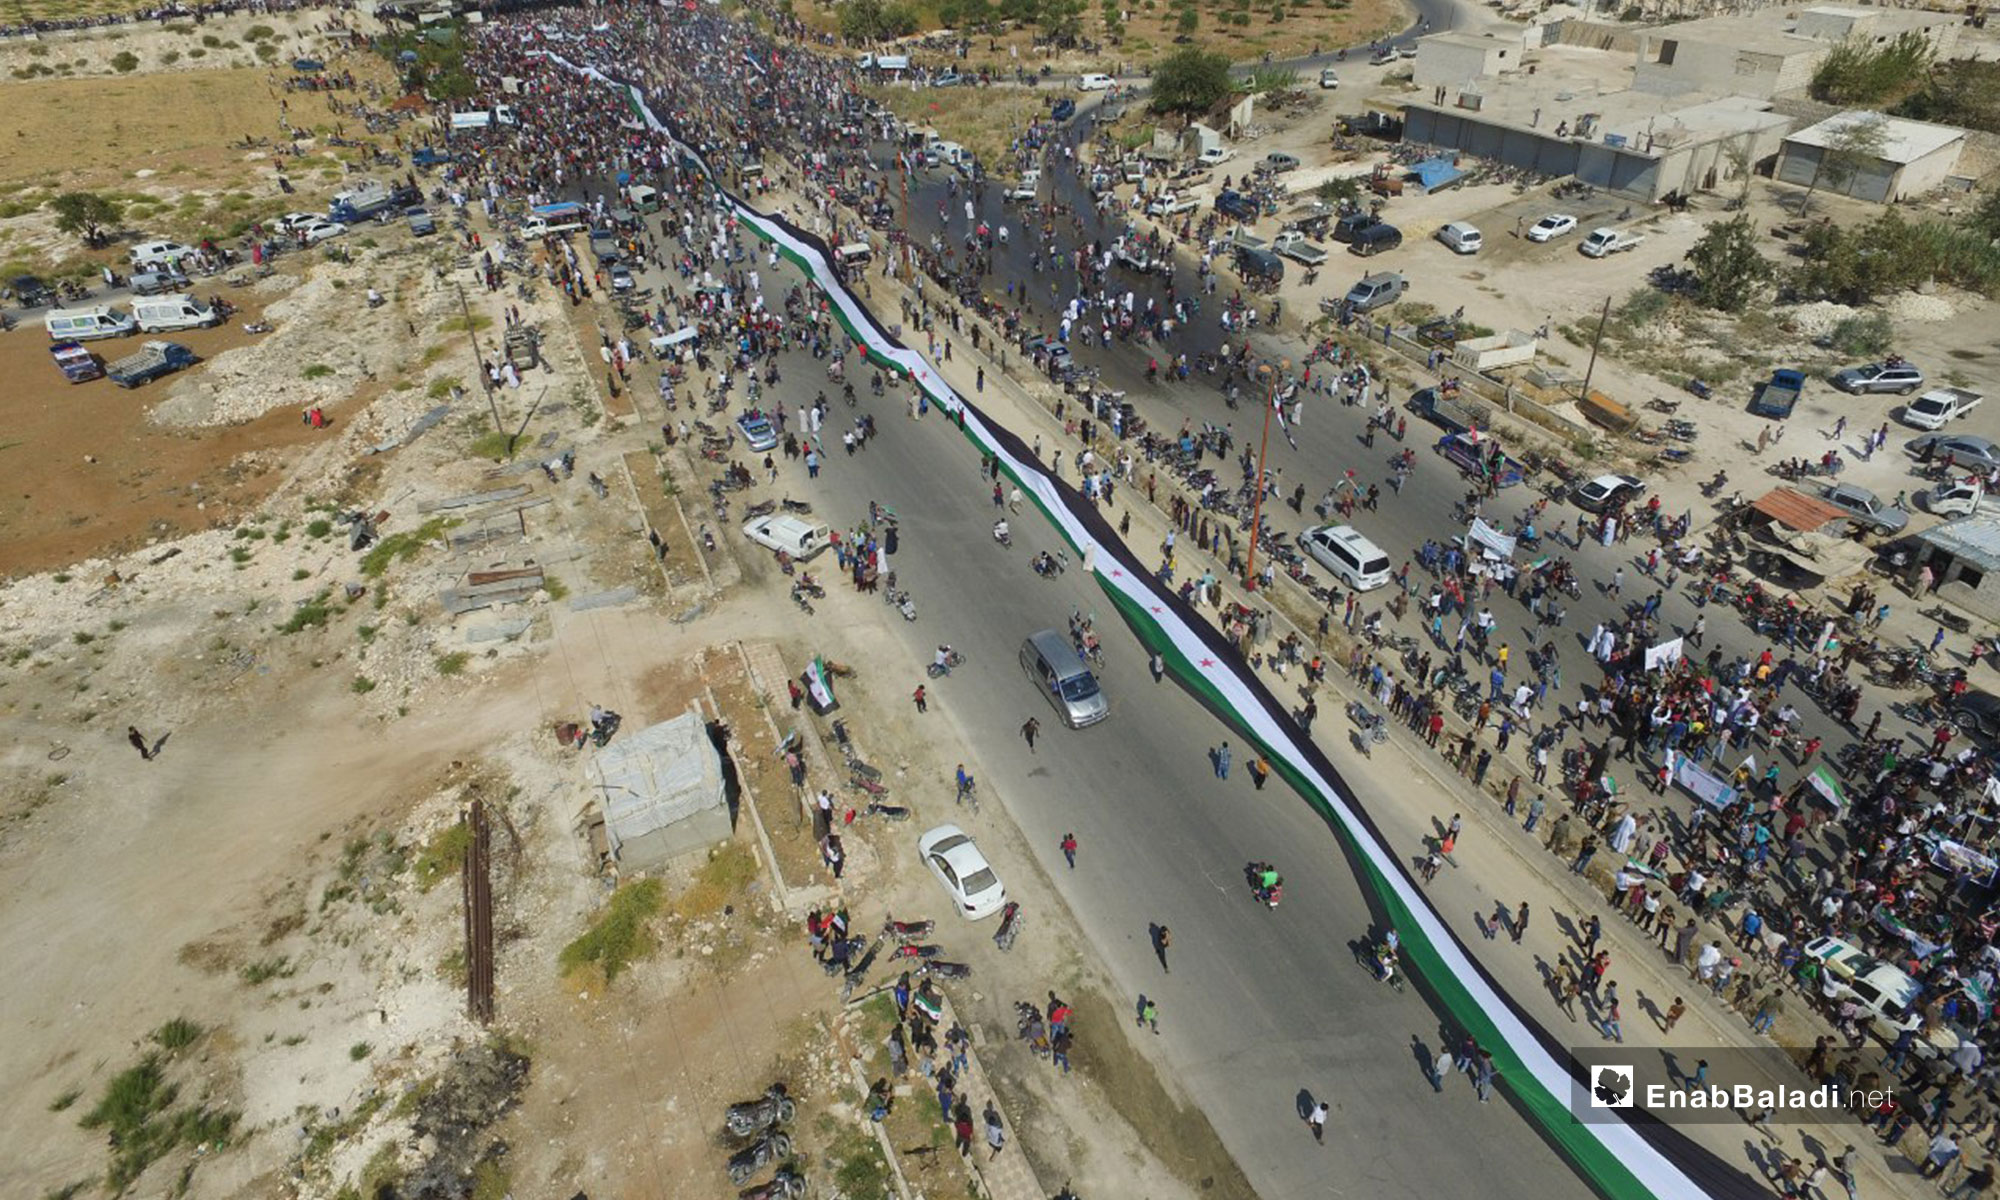 مظاهرة في معرة النعمان تطالب بتجديد الثورة - 21 من أيلول 2018 (عنب بلدي)